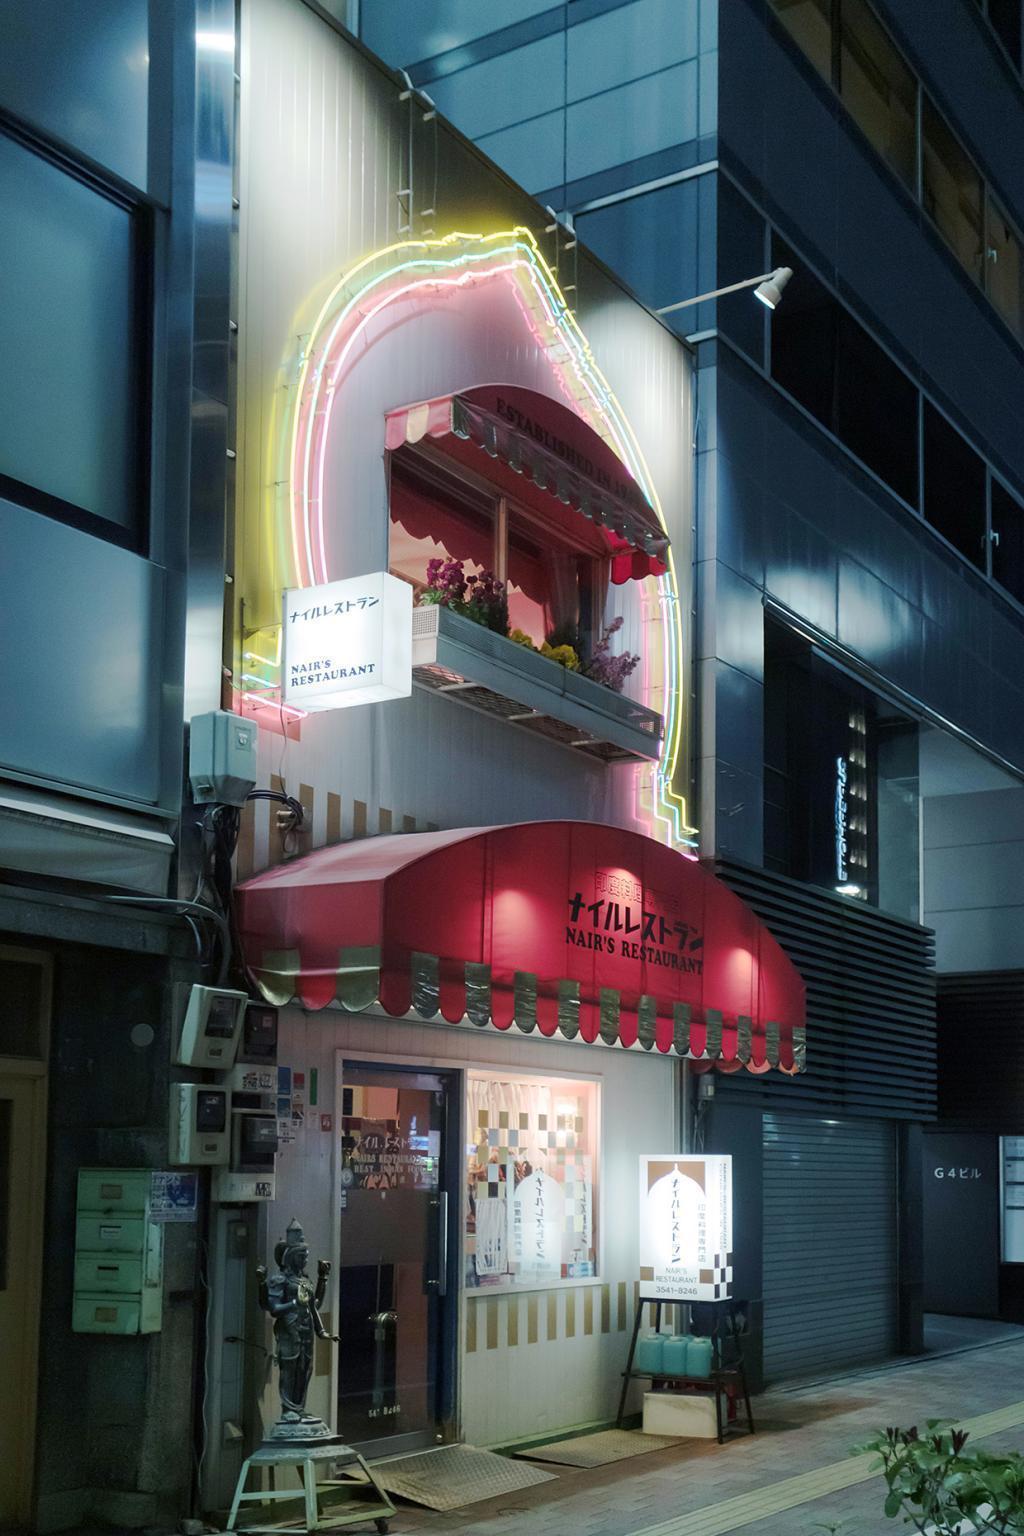  【東銀座】 日本最古の印度料理専門店「ナイルレストラン」